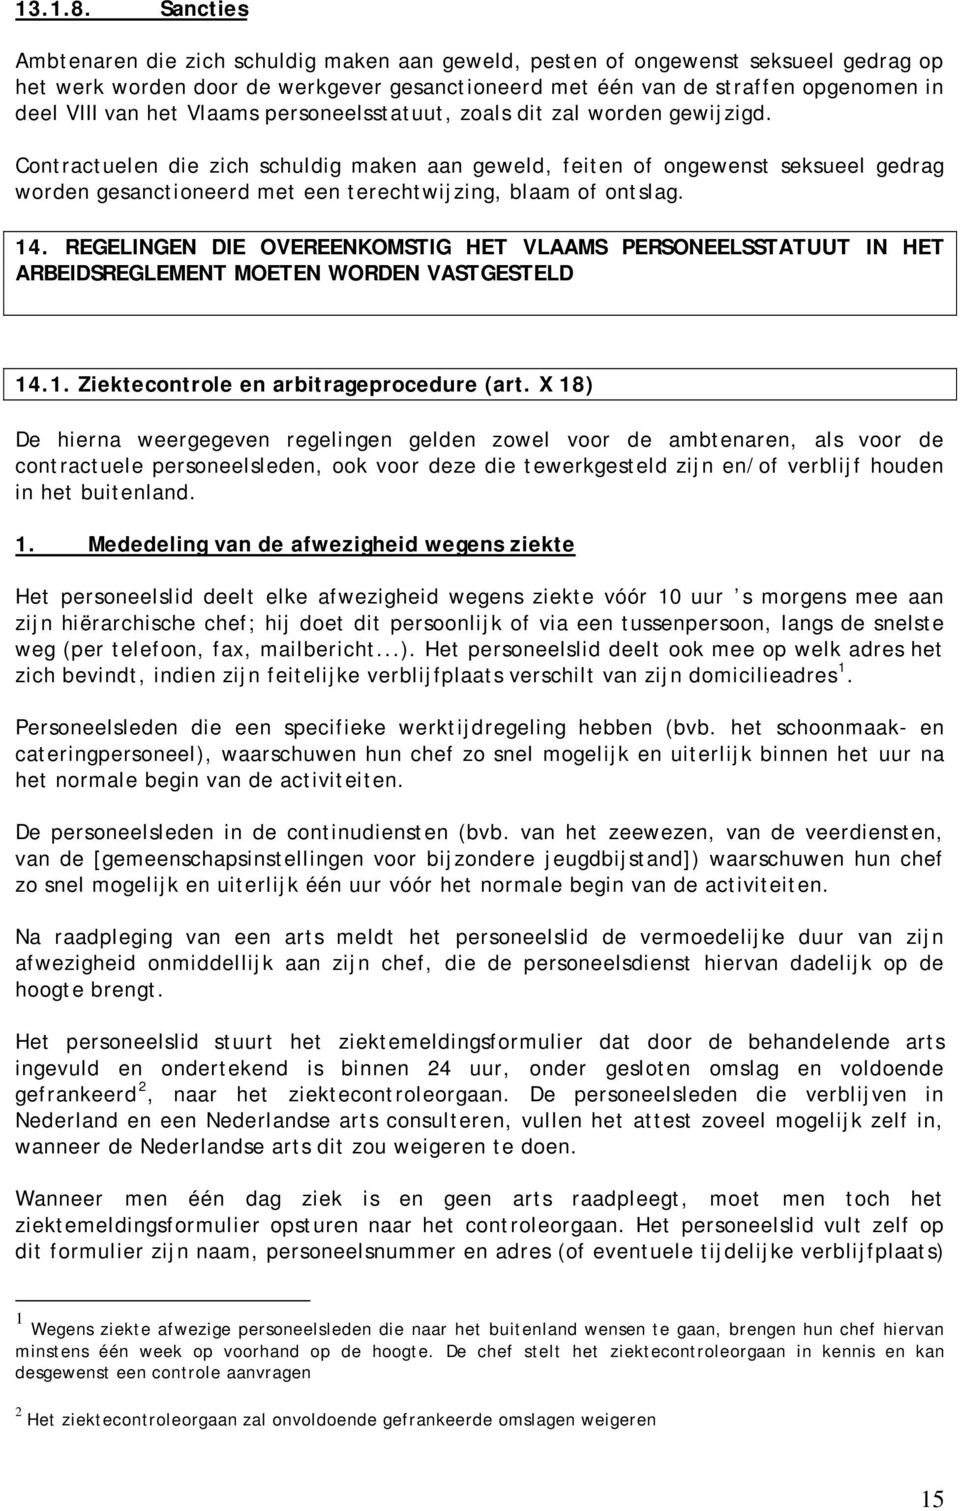 Vlaams personeelsstatuut, zoals dit zal worden gewijzigd.